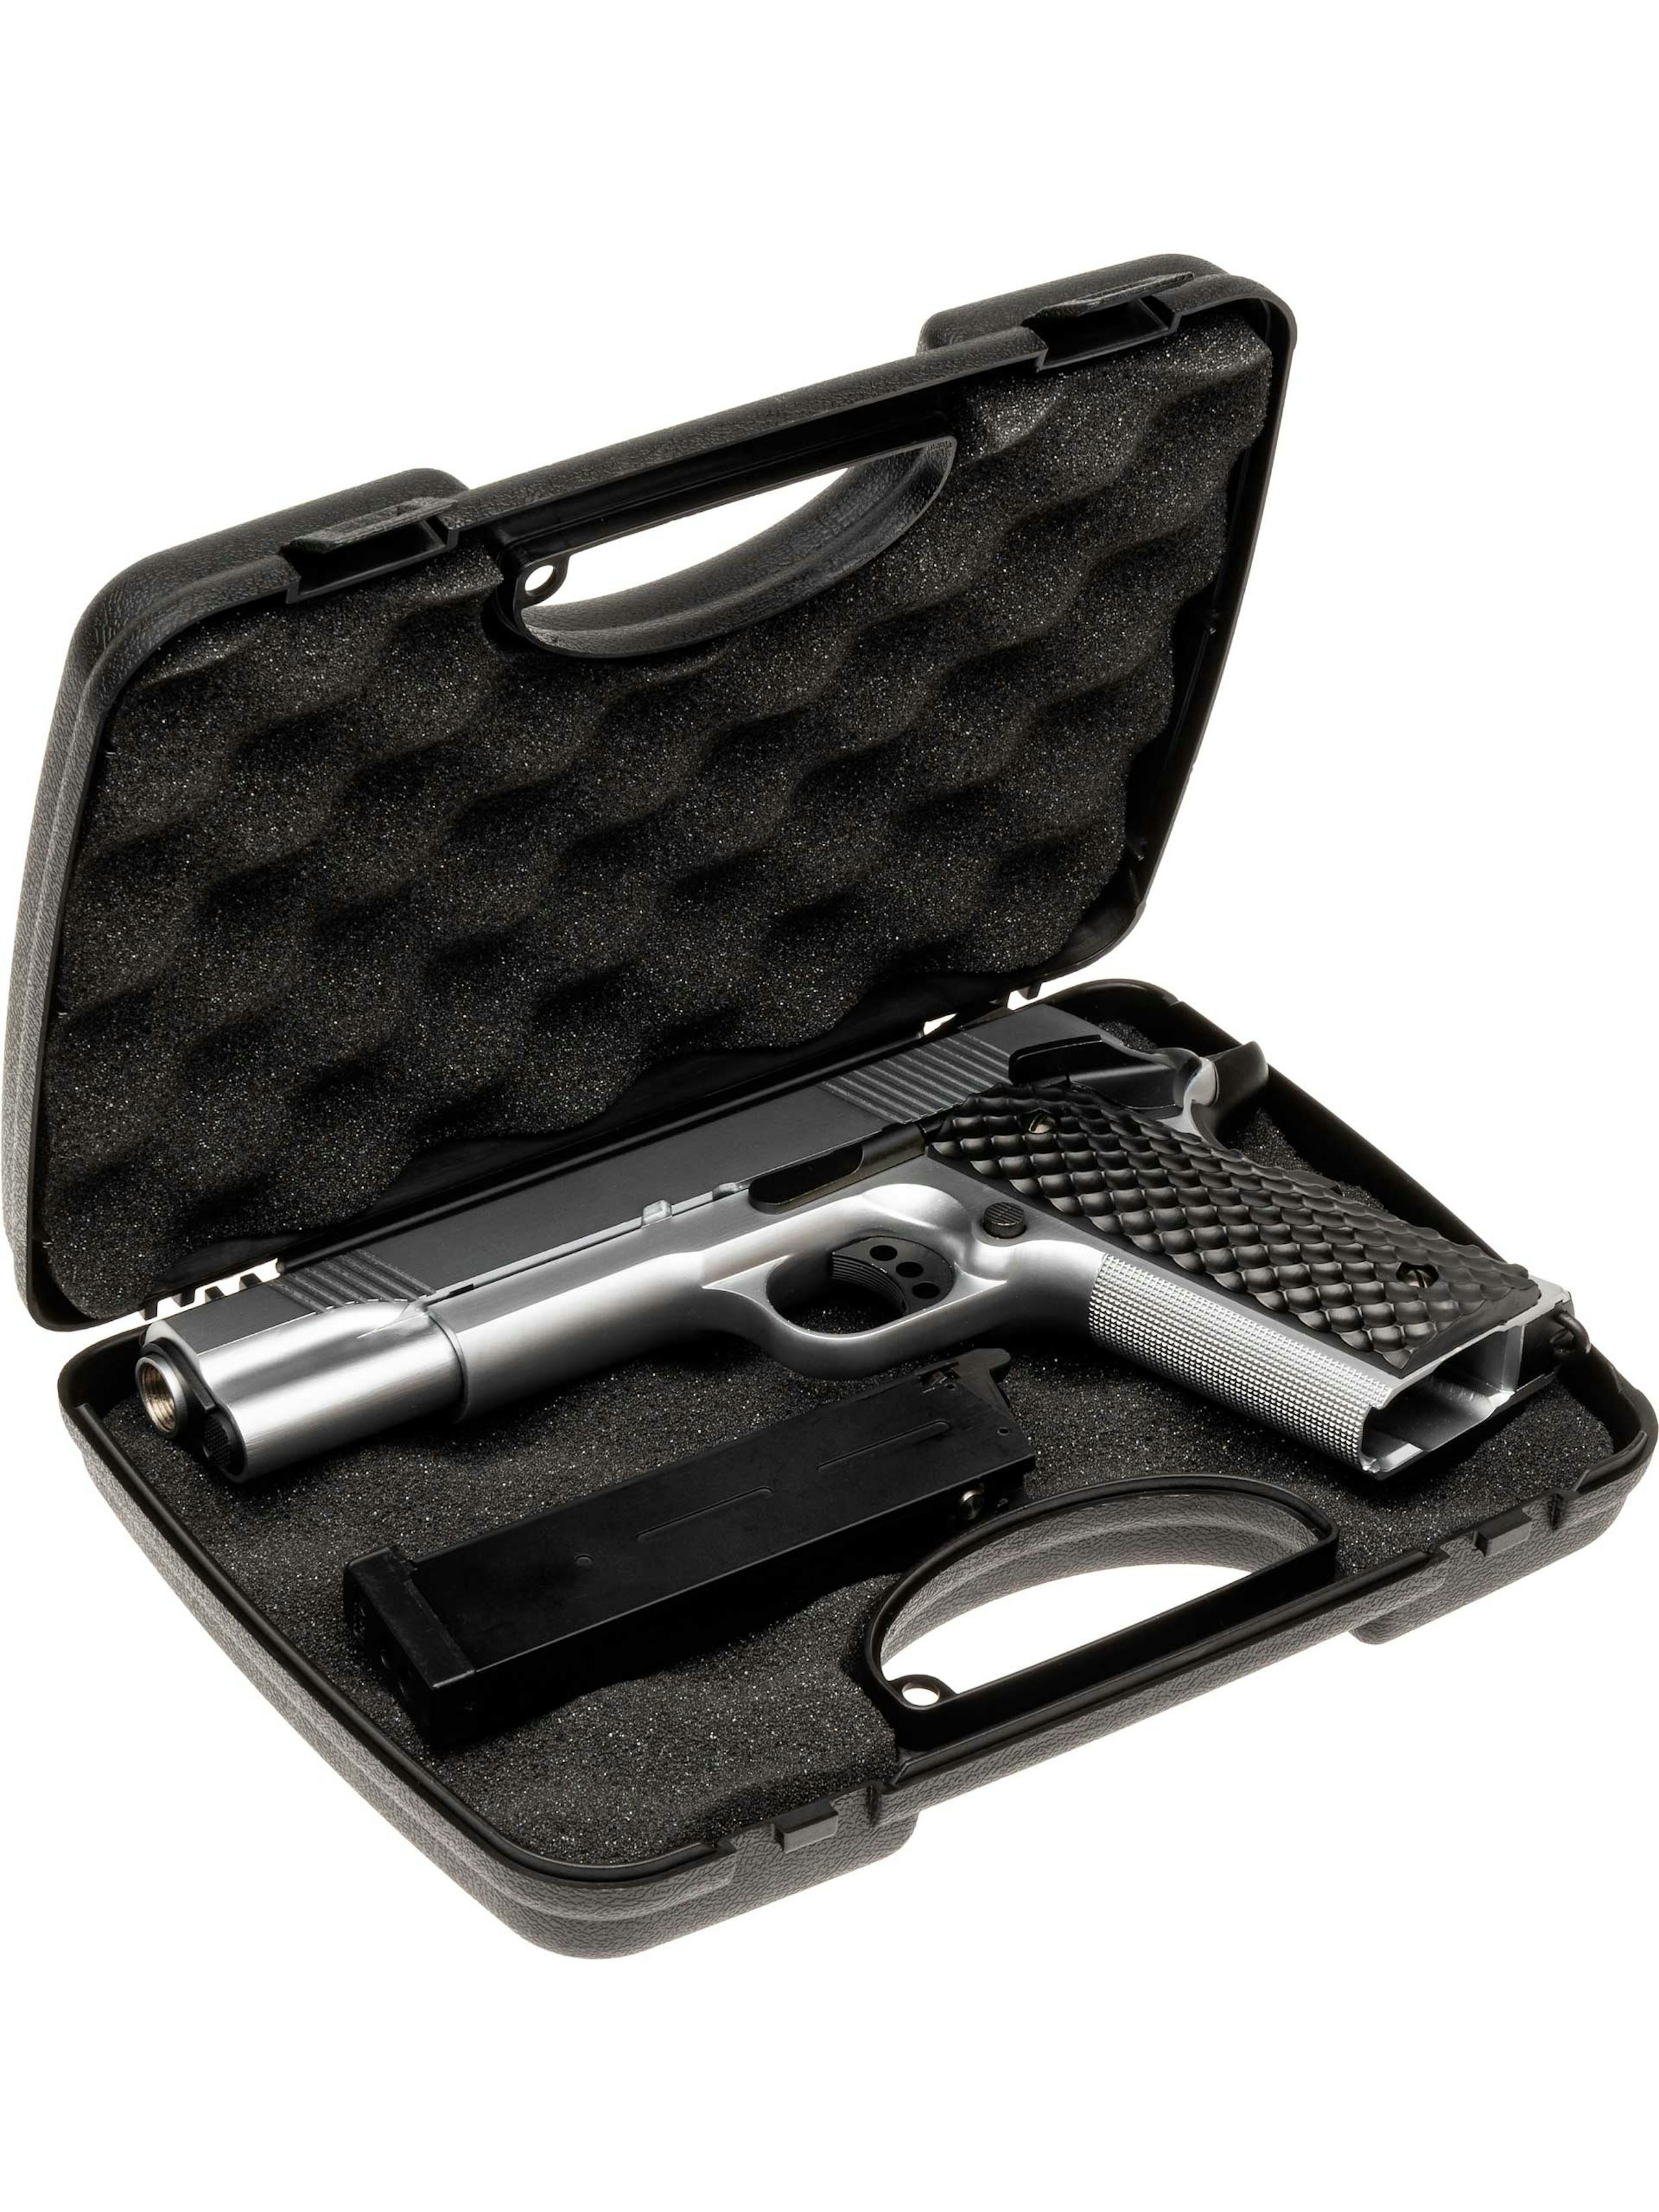 Evolution Airsoft Pistol Hard Case Internal Size 23.5x16x4.6